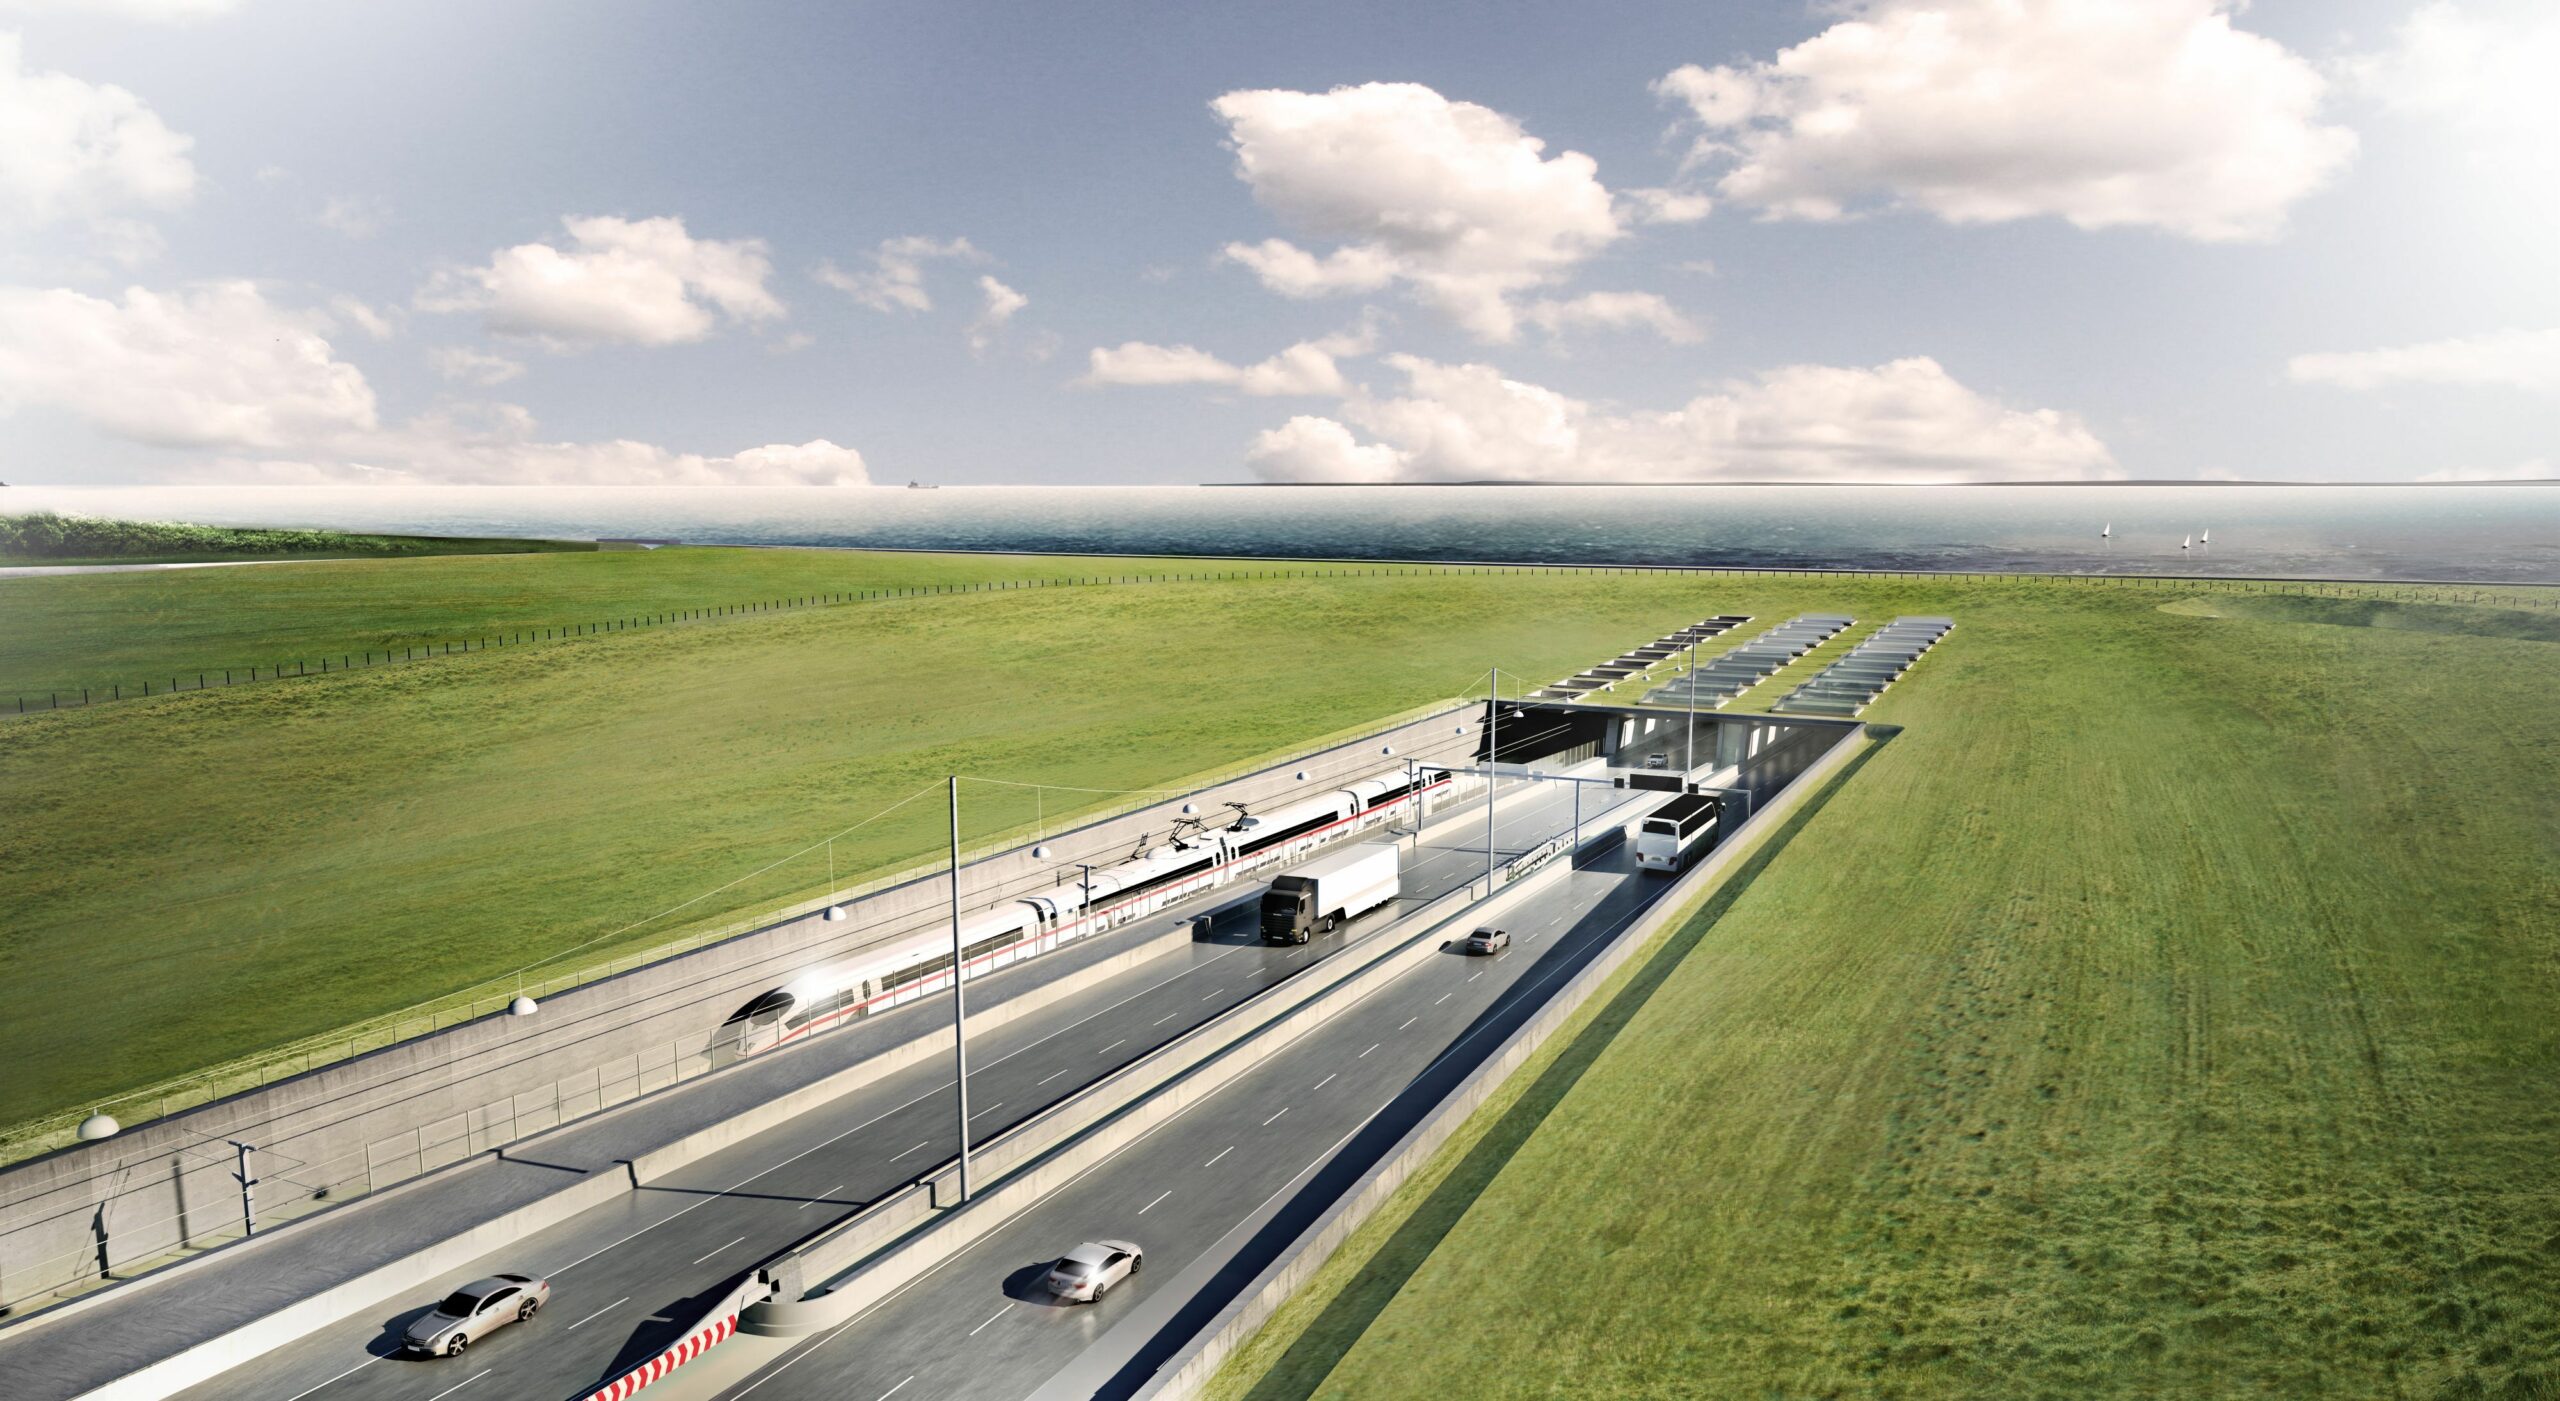 Visualisierung des Bereichs vorm geplanten Fehmarnbelt-Tunnel, vier Fahrspuren für Autos und Gleise für die Bahn